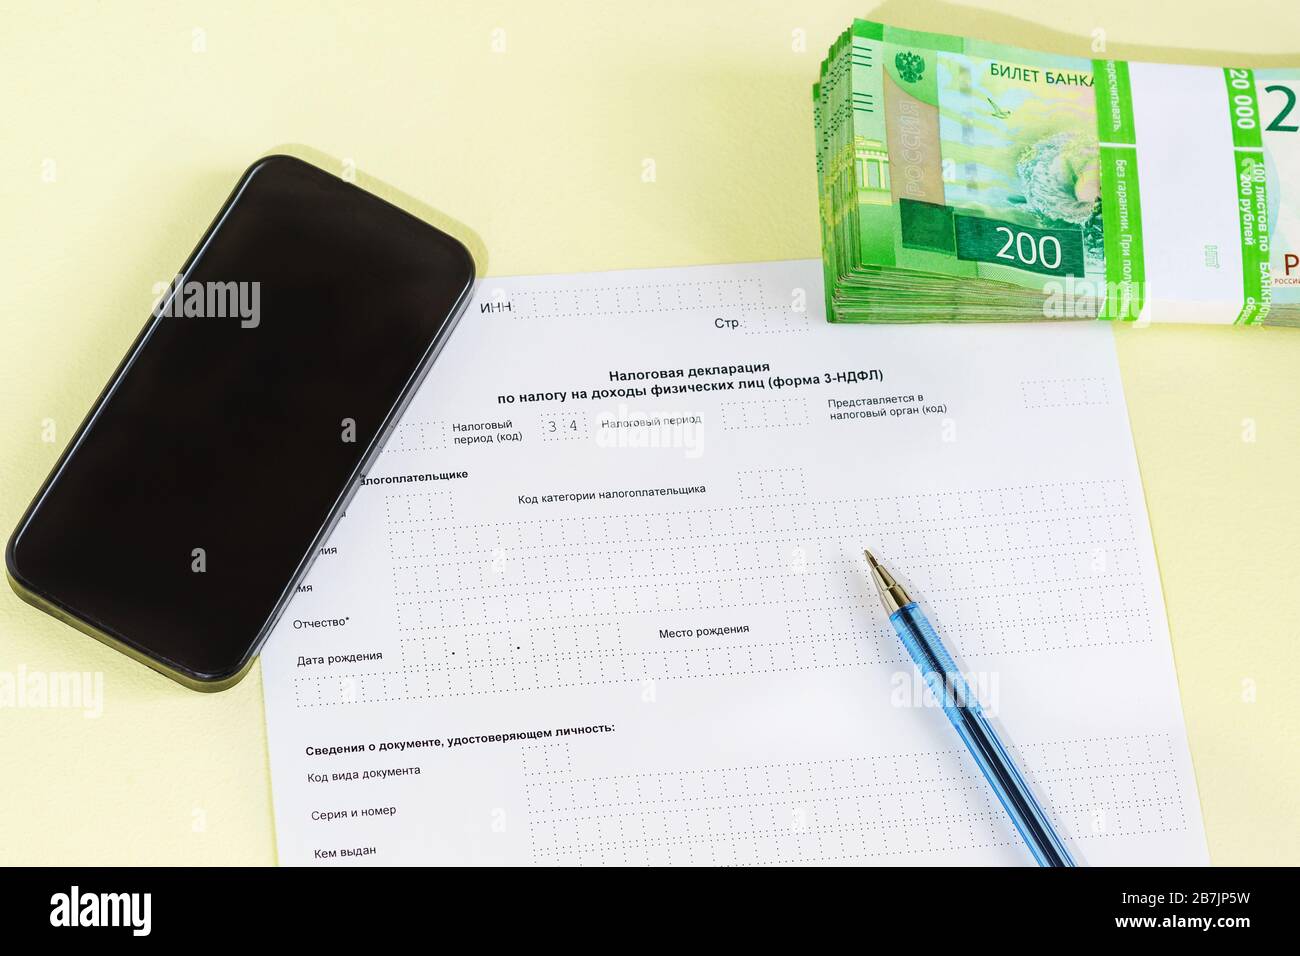 Documenter en russe la « Déclaration fiscale sur l'impôt sur le revenu des  particuliers », le PEN, le smartphone et l'argent pour le paiement de l' impôt. Temps de déclaration des revenus Photo